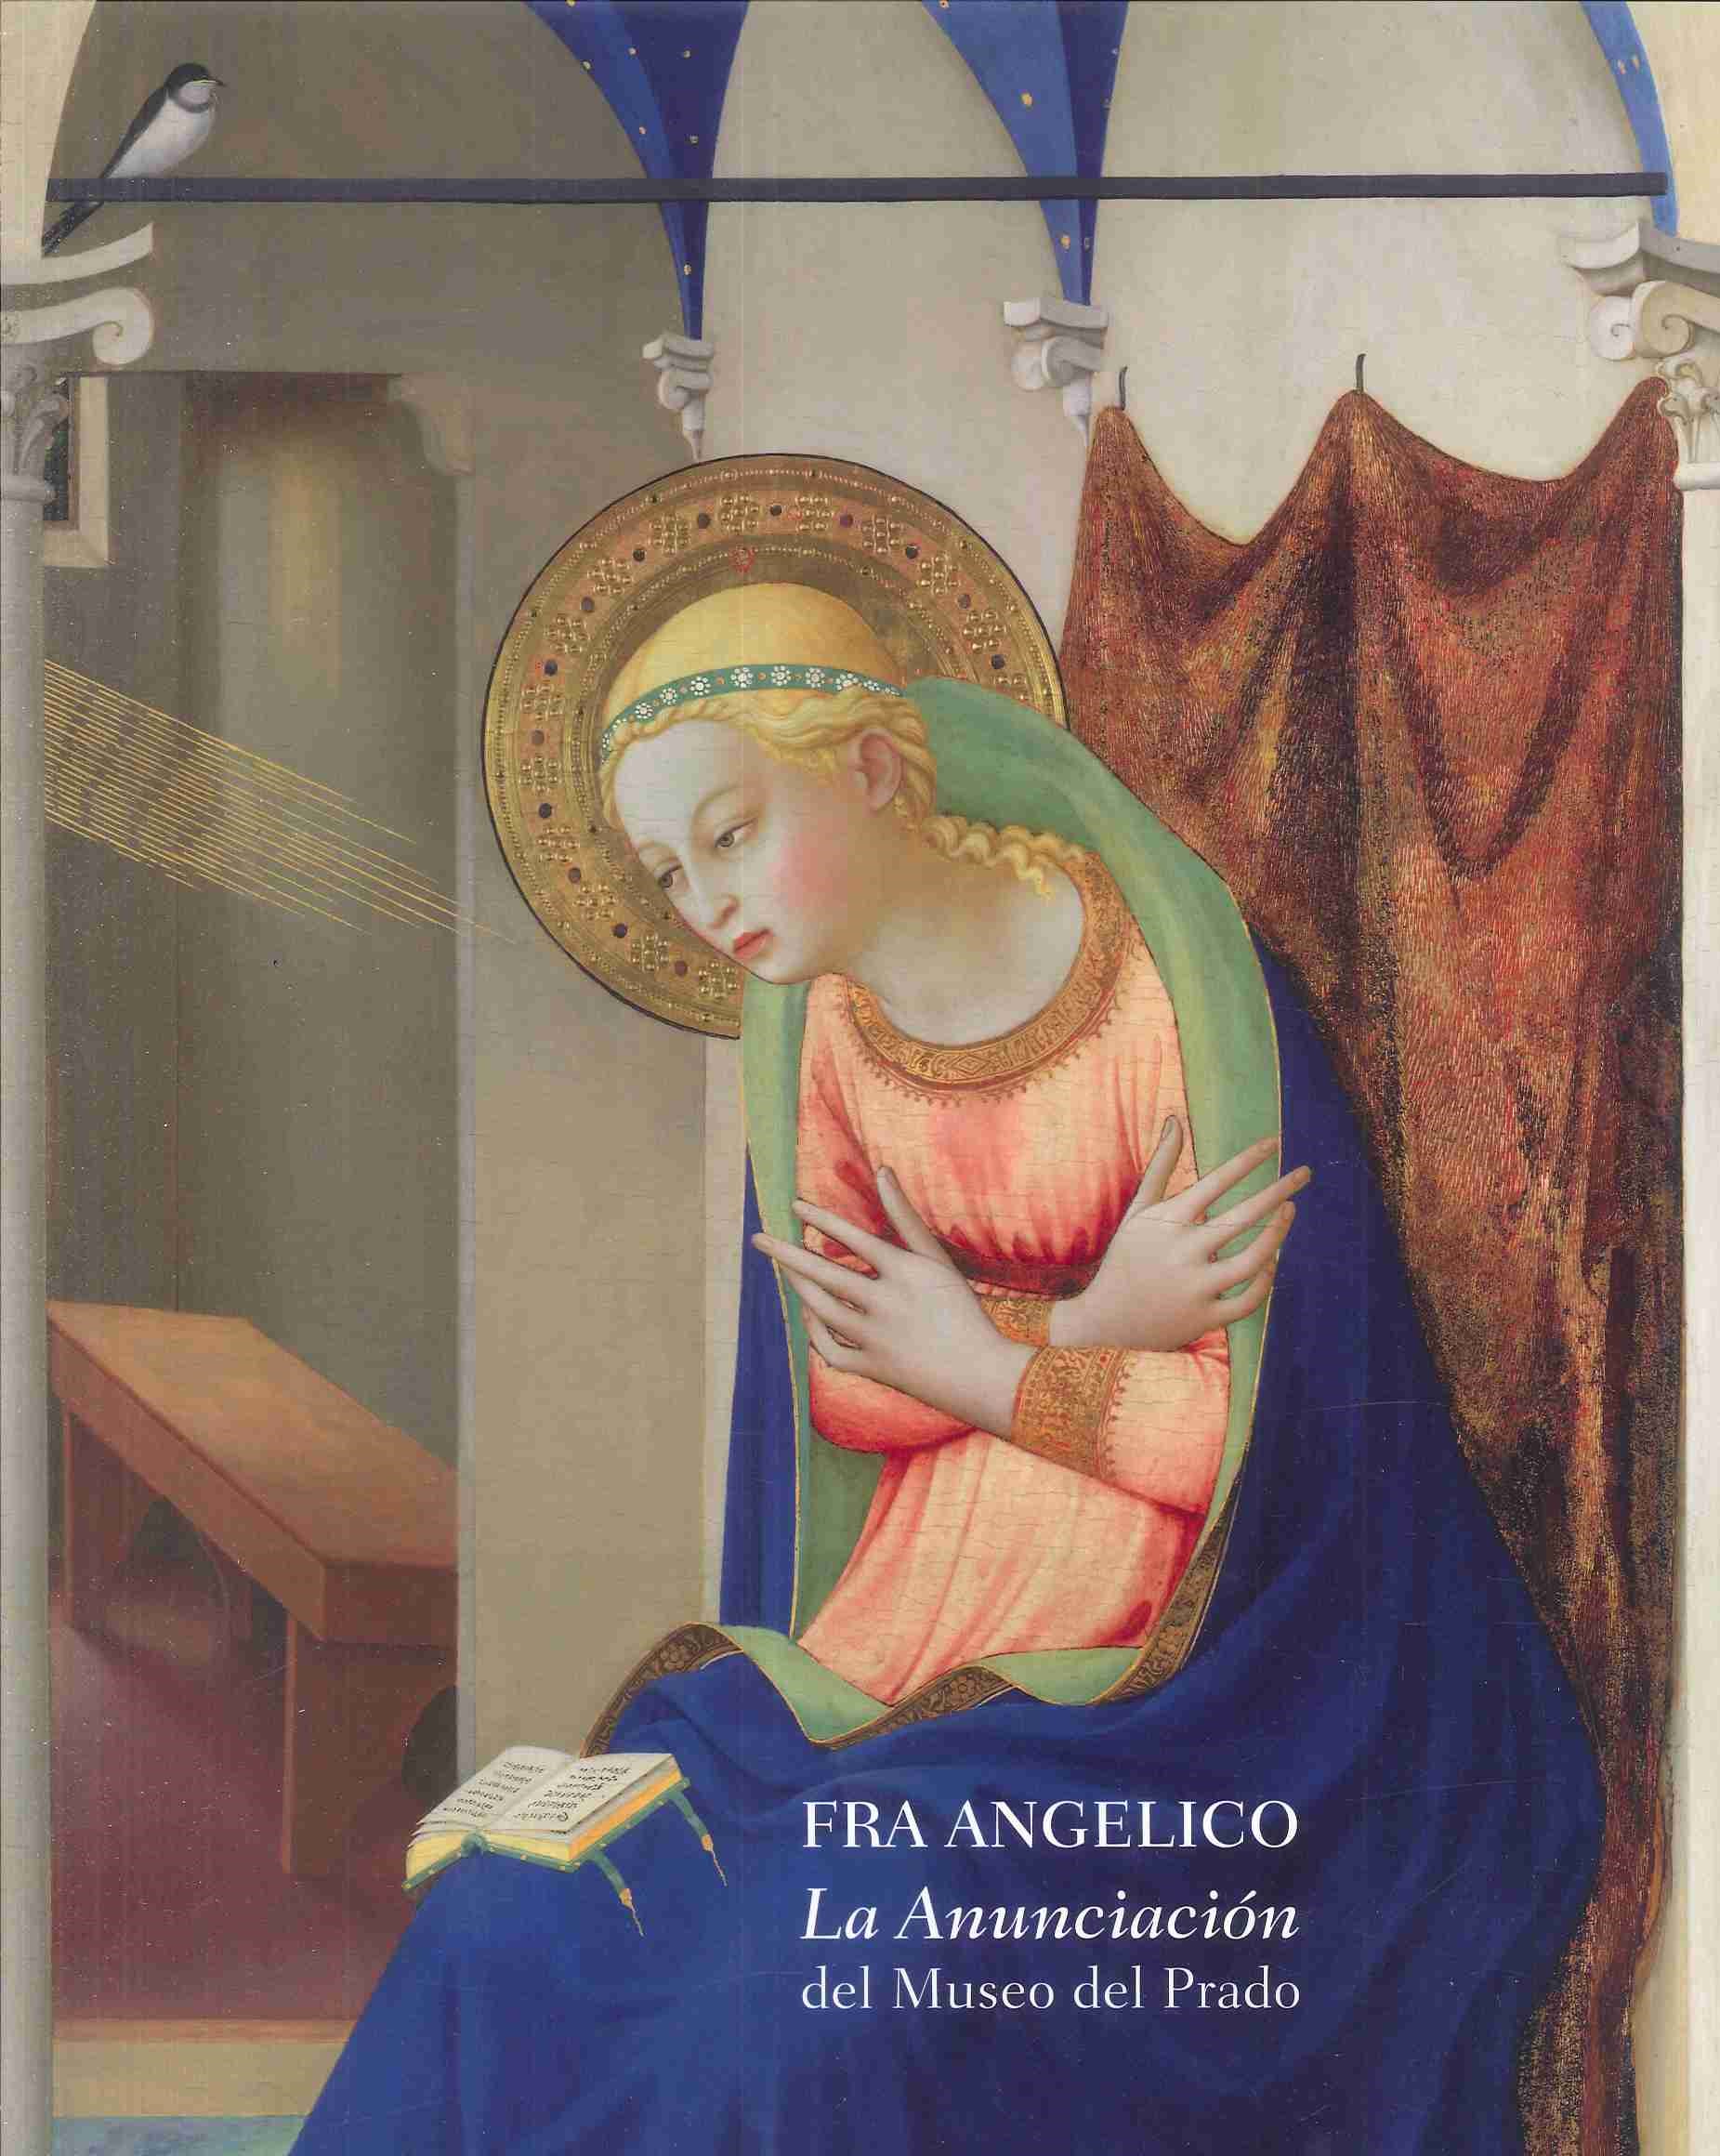 Imagen de portada del libro Fra Angelico, "La Anunciación" del Museo del Prado